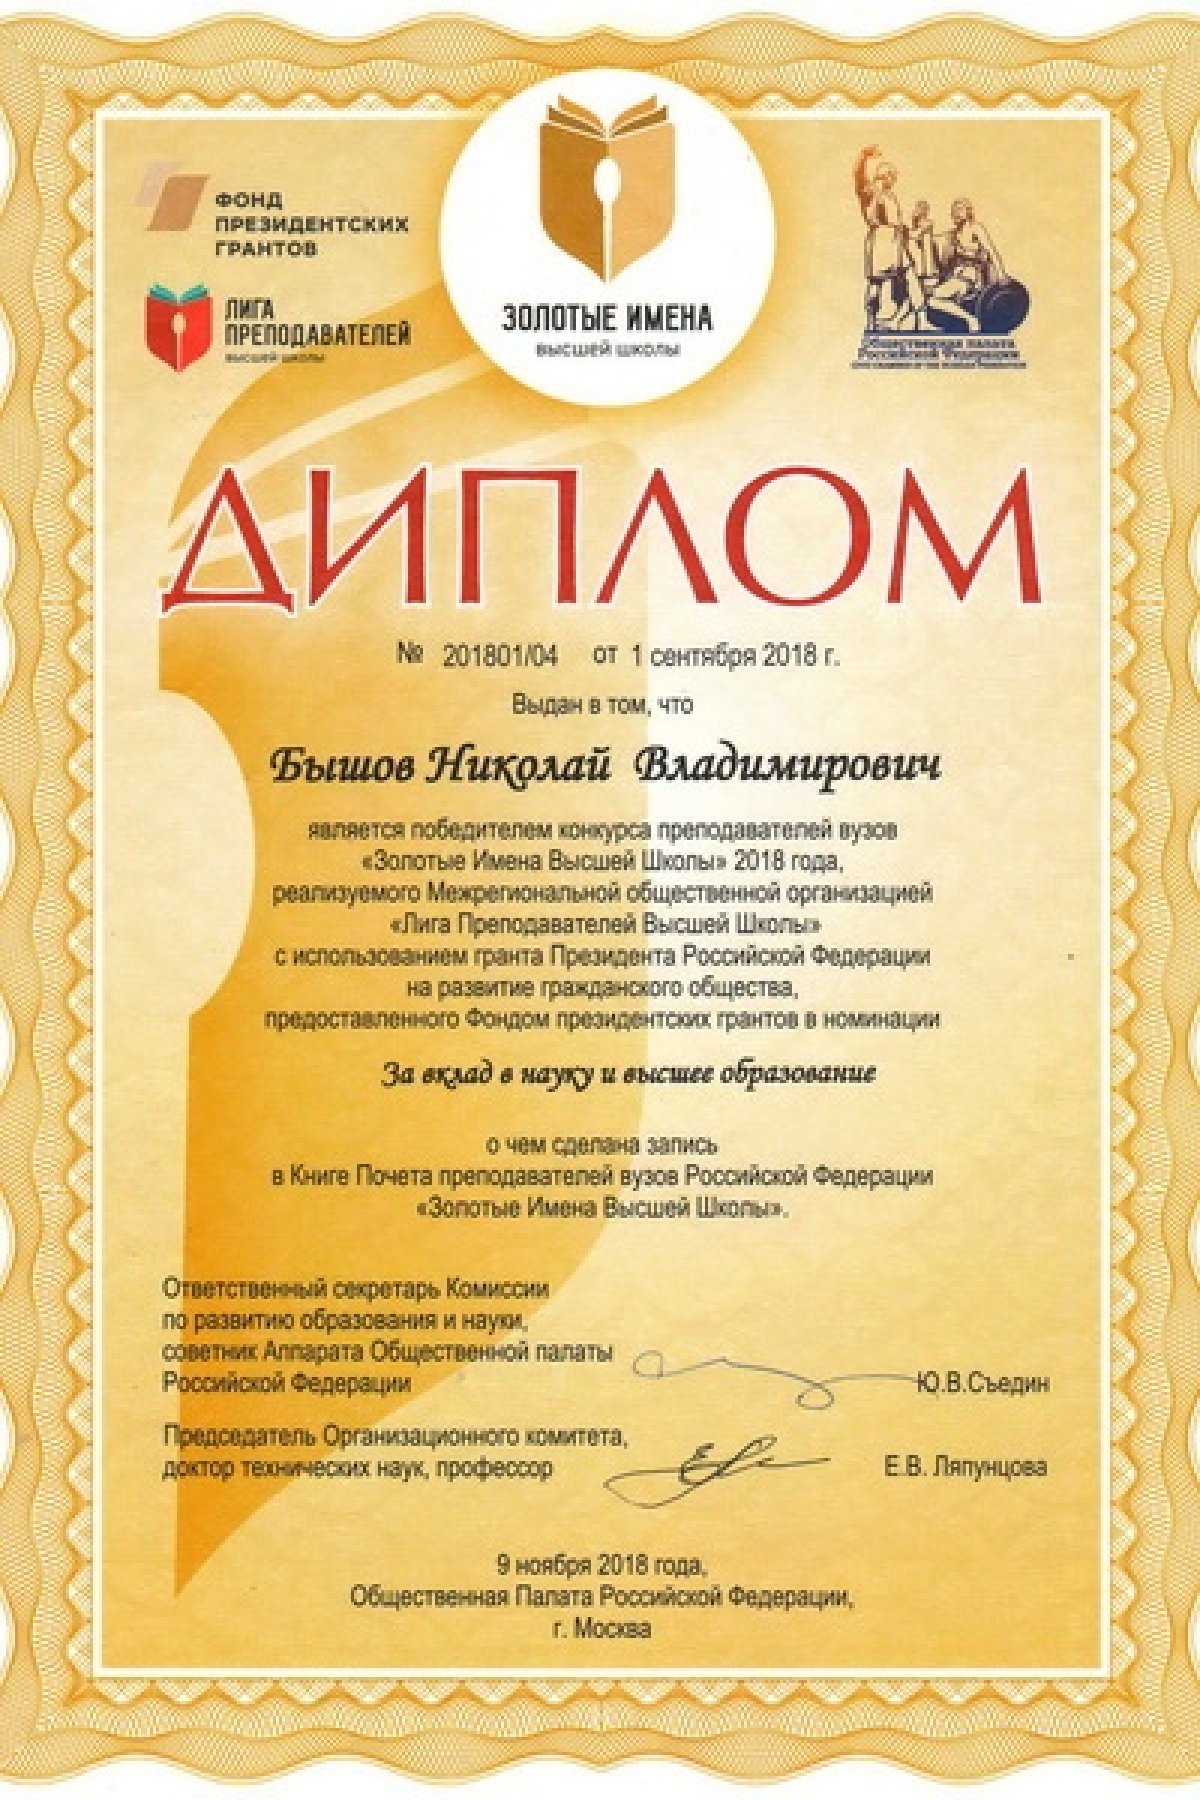 Ректор университета стал победителем российского конкурса «Золотые Имена Высшей Школы»